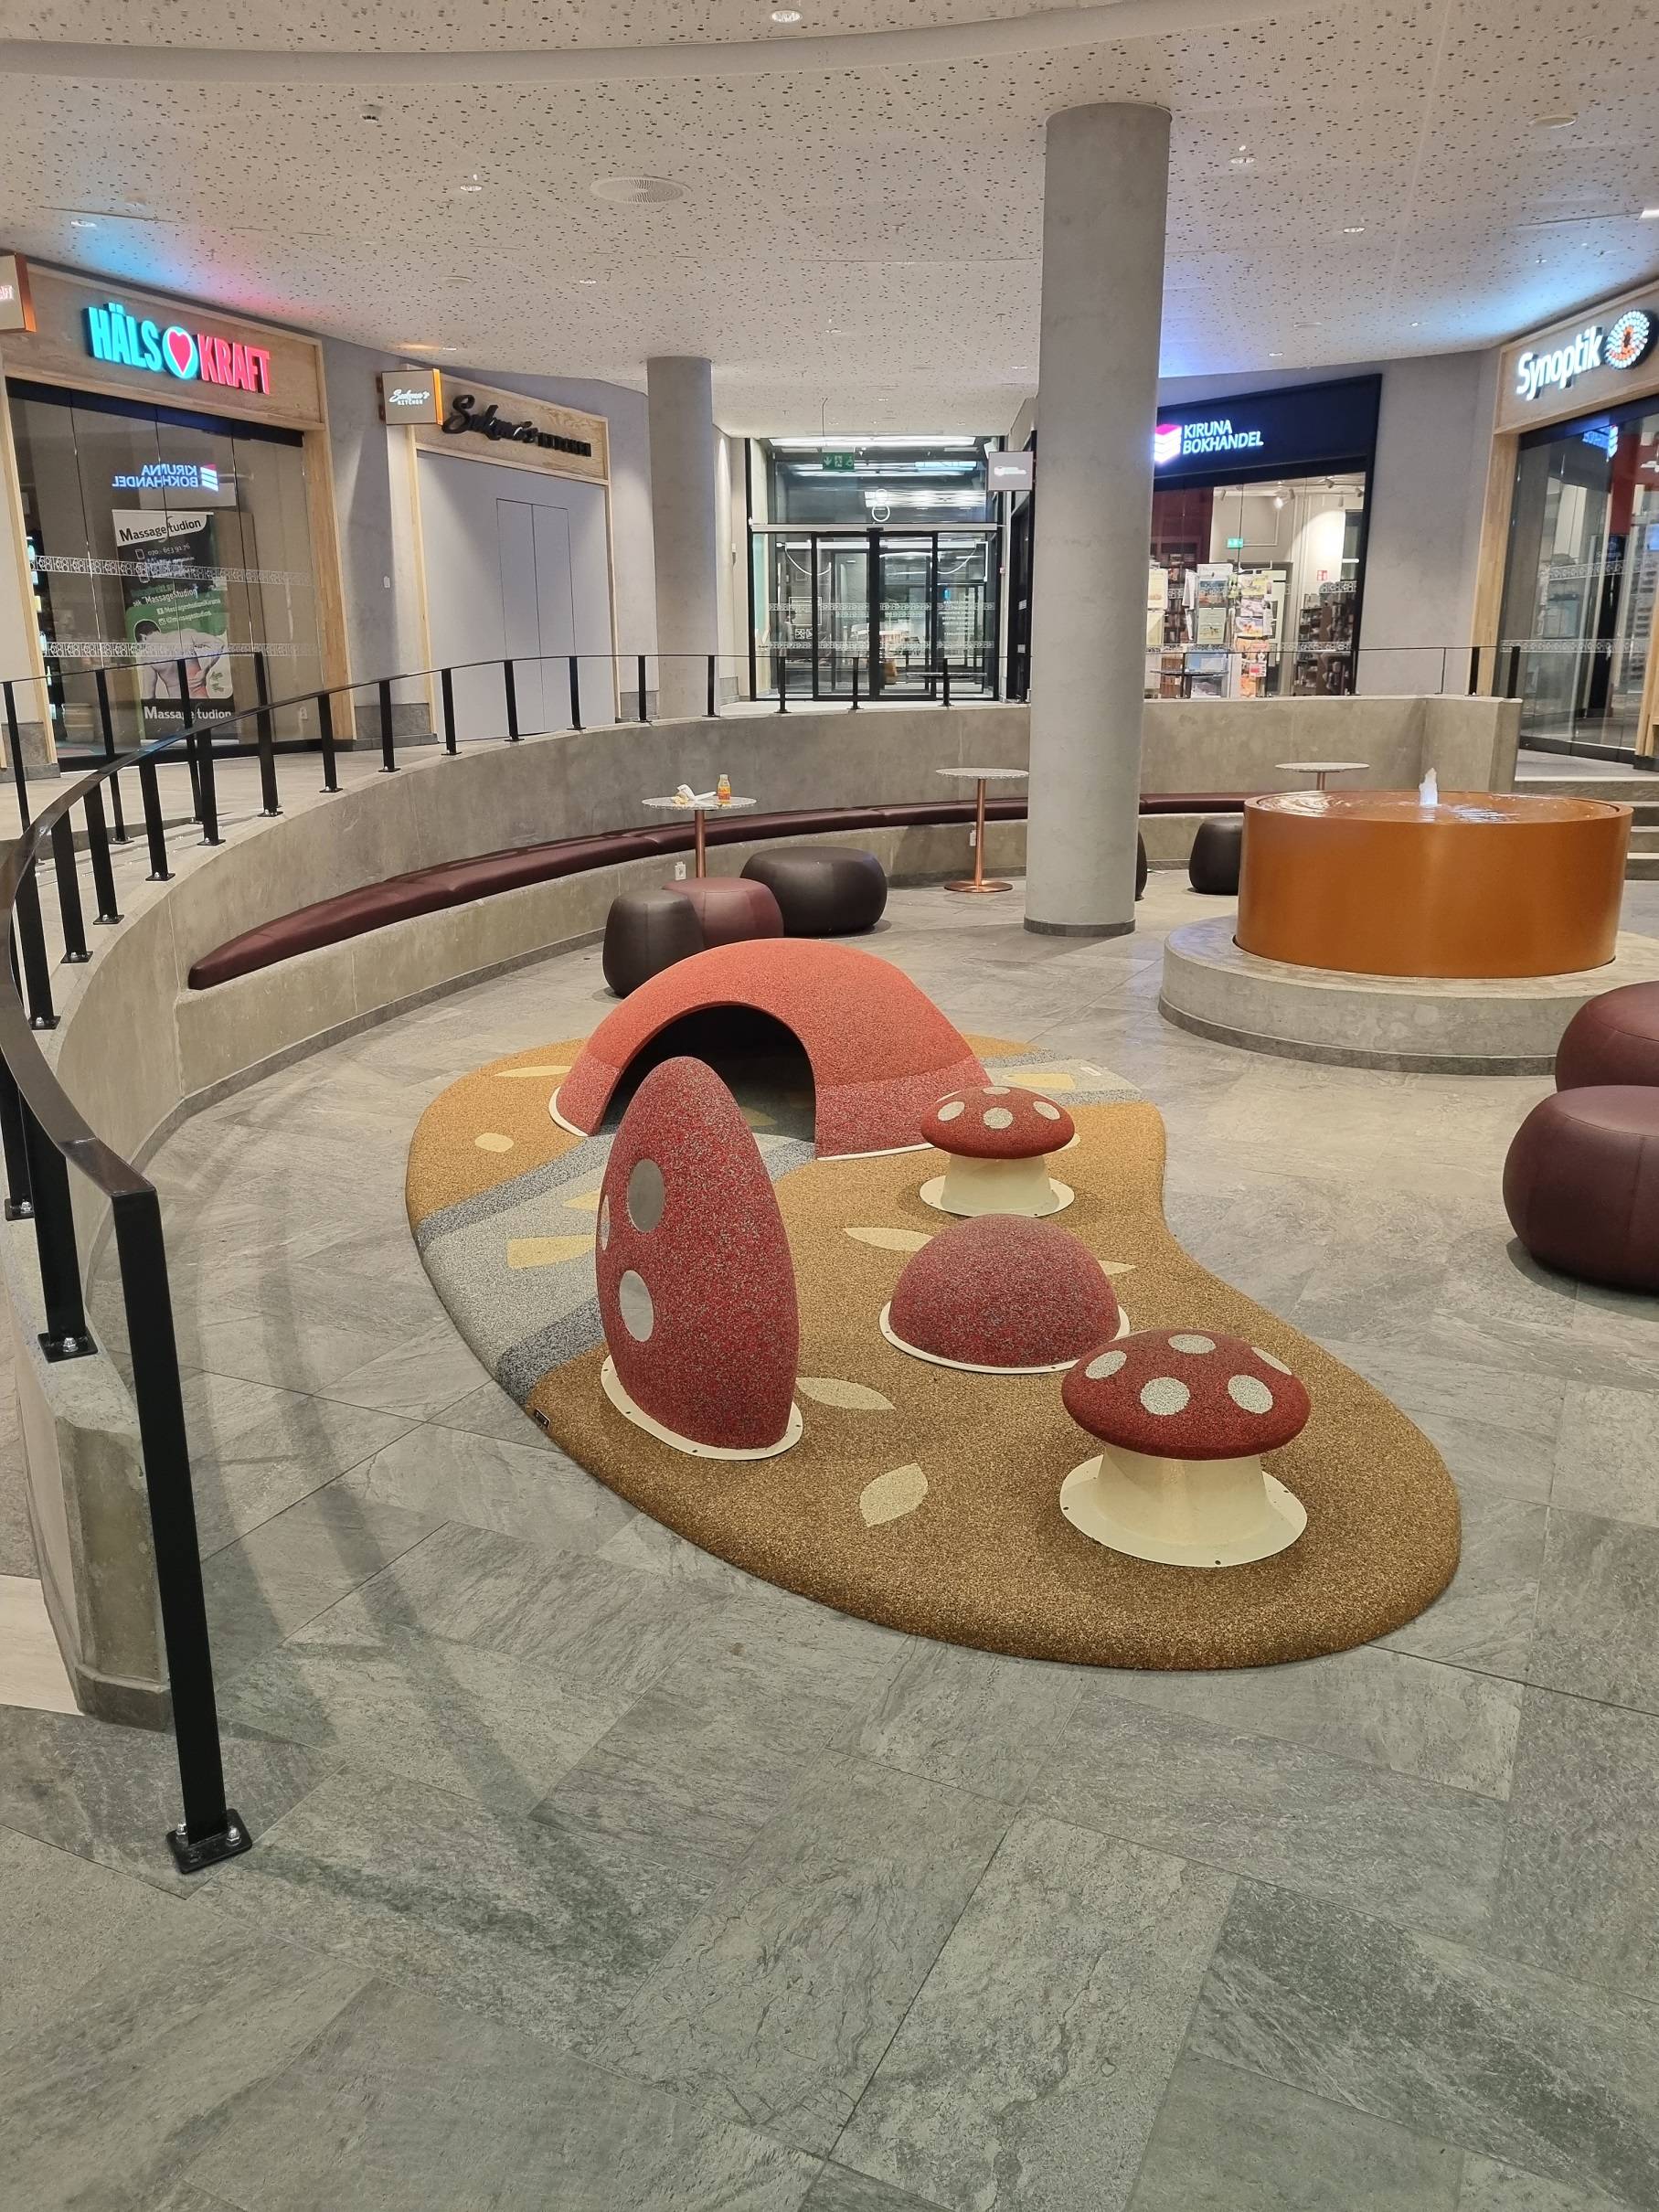 Popupplay by Rodeco, design speelplek, verplaatsbaar, kant en klaar, perfect voor winkelcentrum, vliegveld, ziekenhuis, recreatie, horeca en retail.